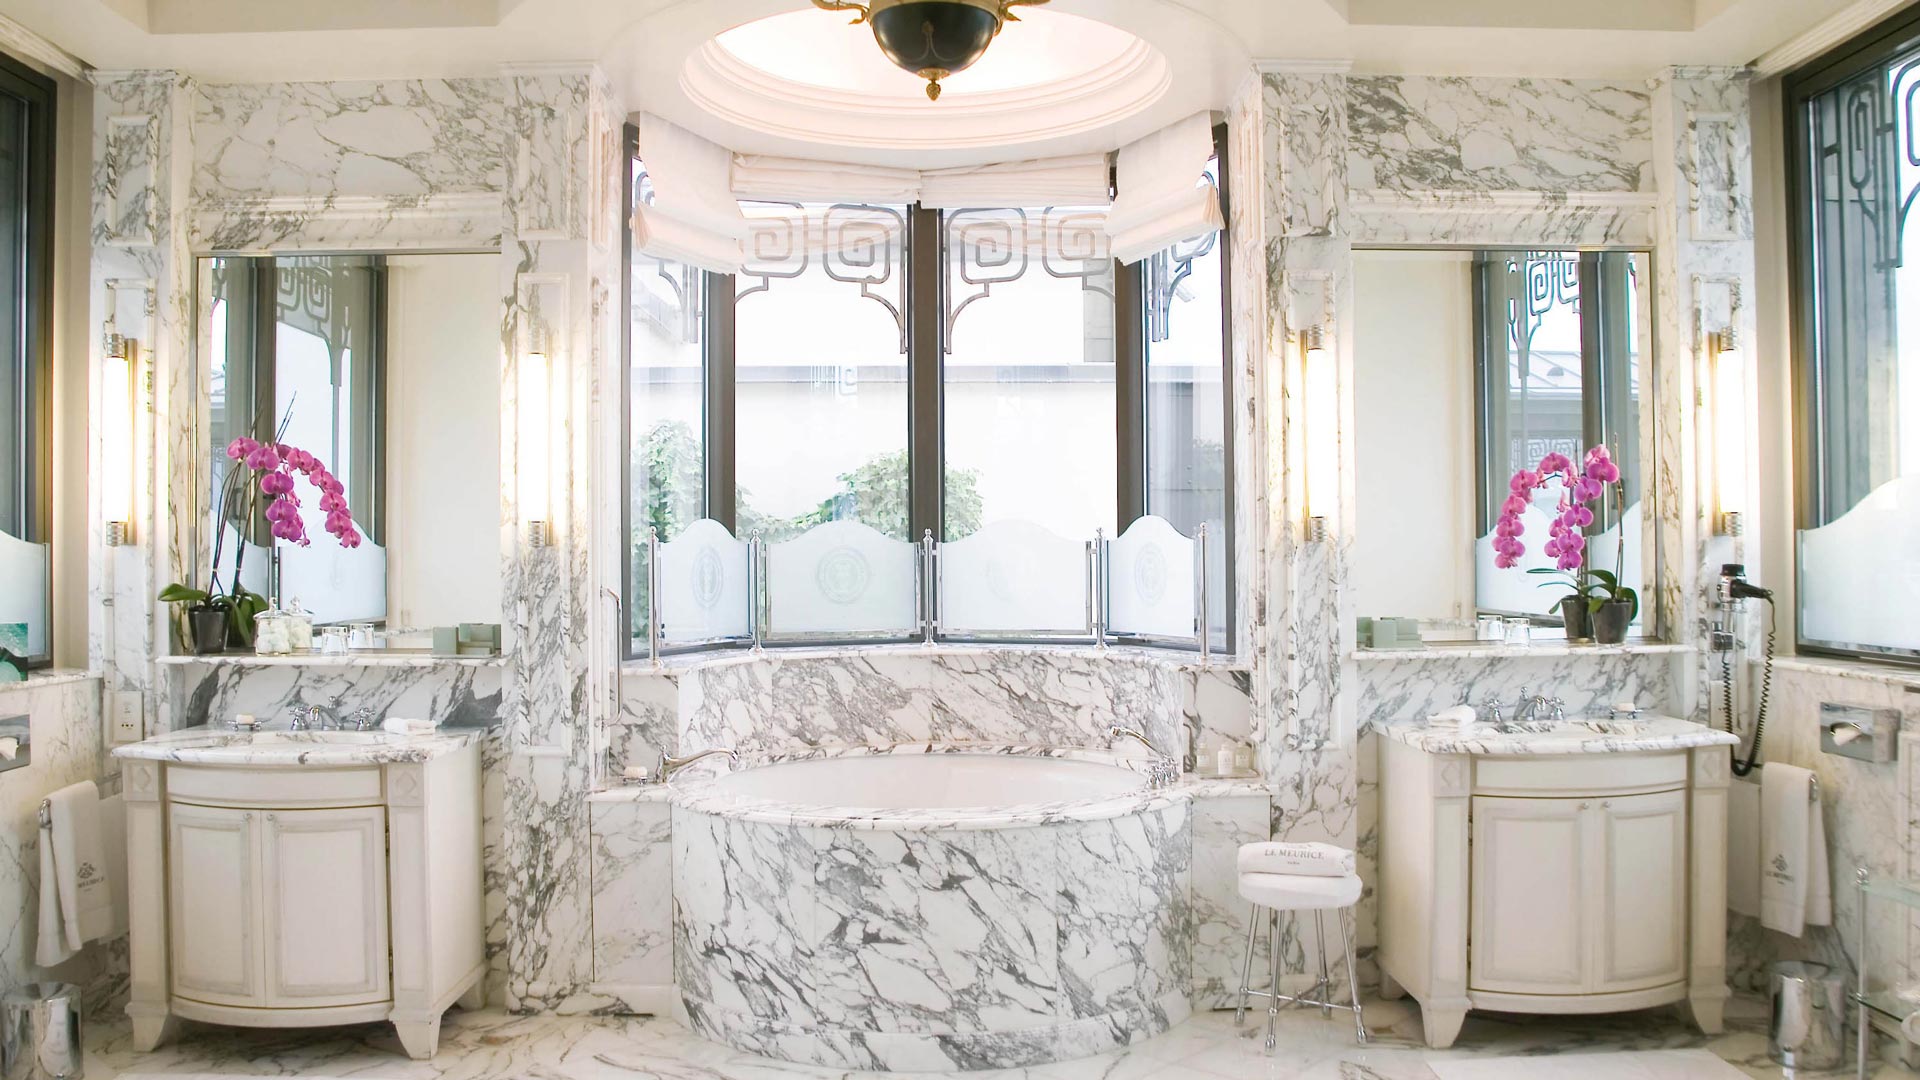 Le Meurice-Luxury Hotel- Designing Destinations-Interior design-bathroom